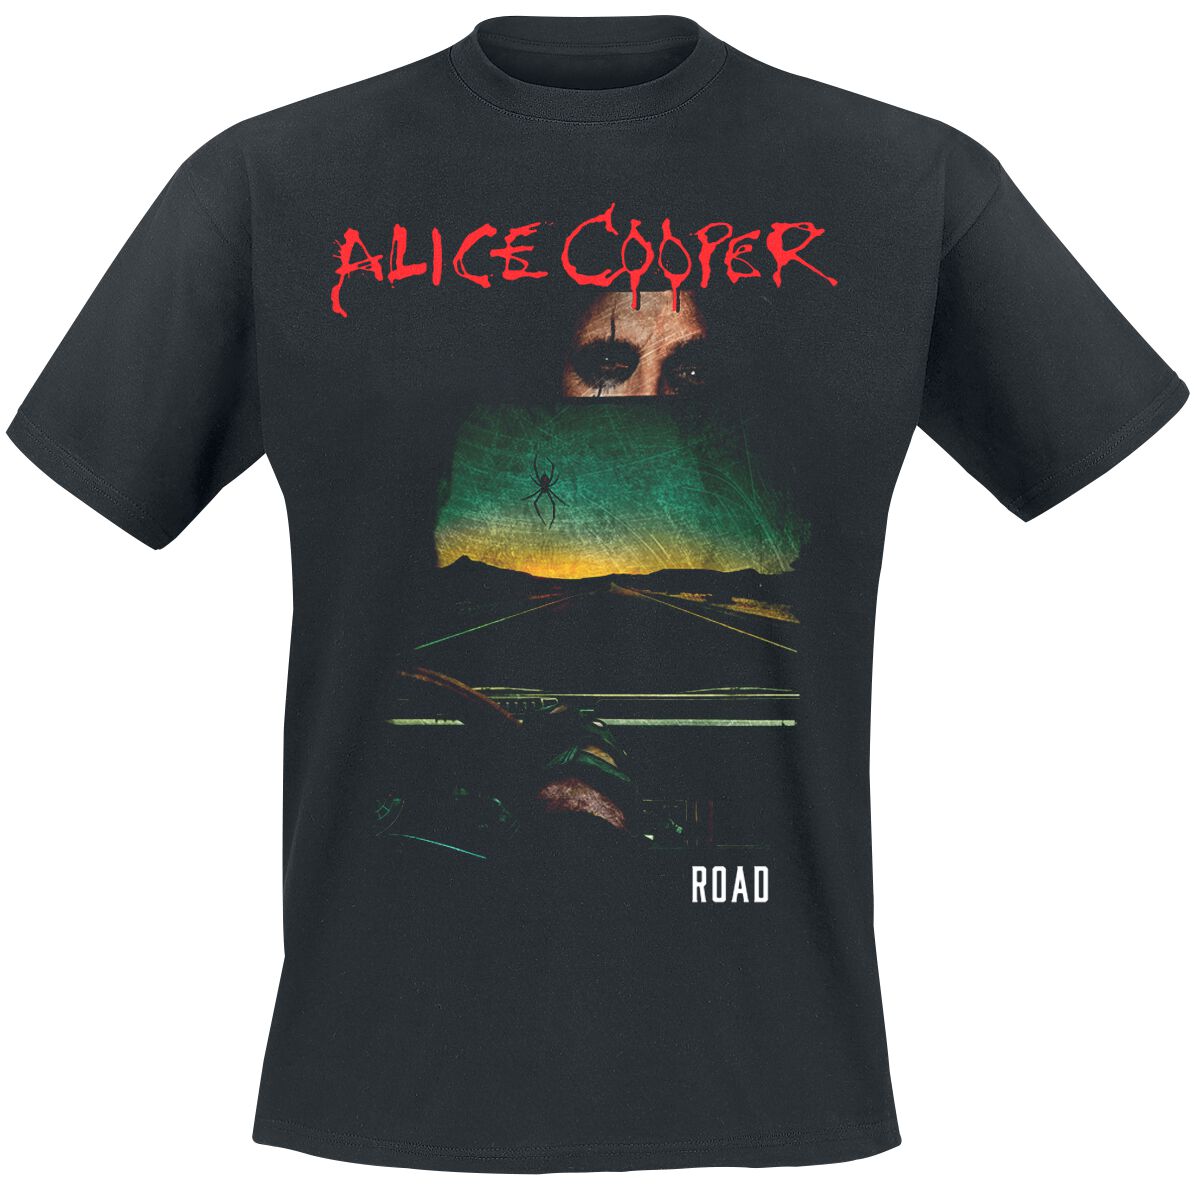 Alice Cooper T-Shirt - Road Cover Tracklist - S bis XXL - für Männer - Größe M - schwarz  - Lizenziertes Merchandise!